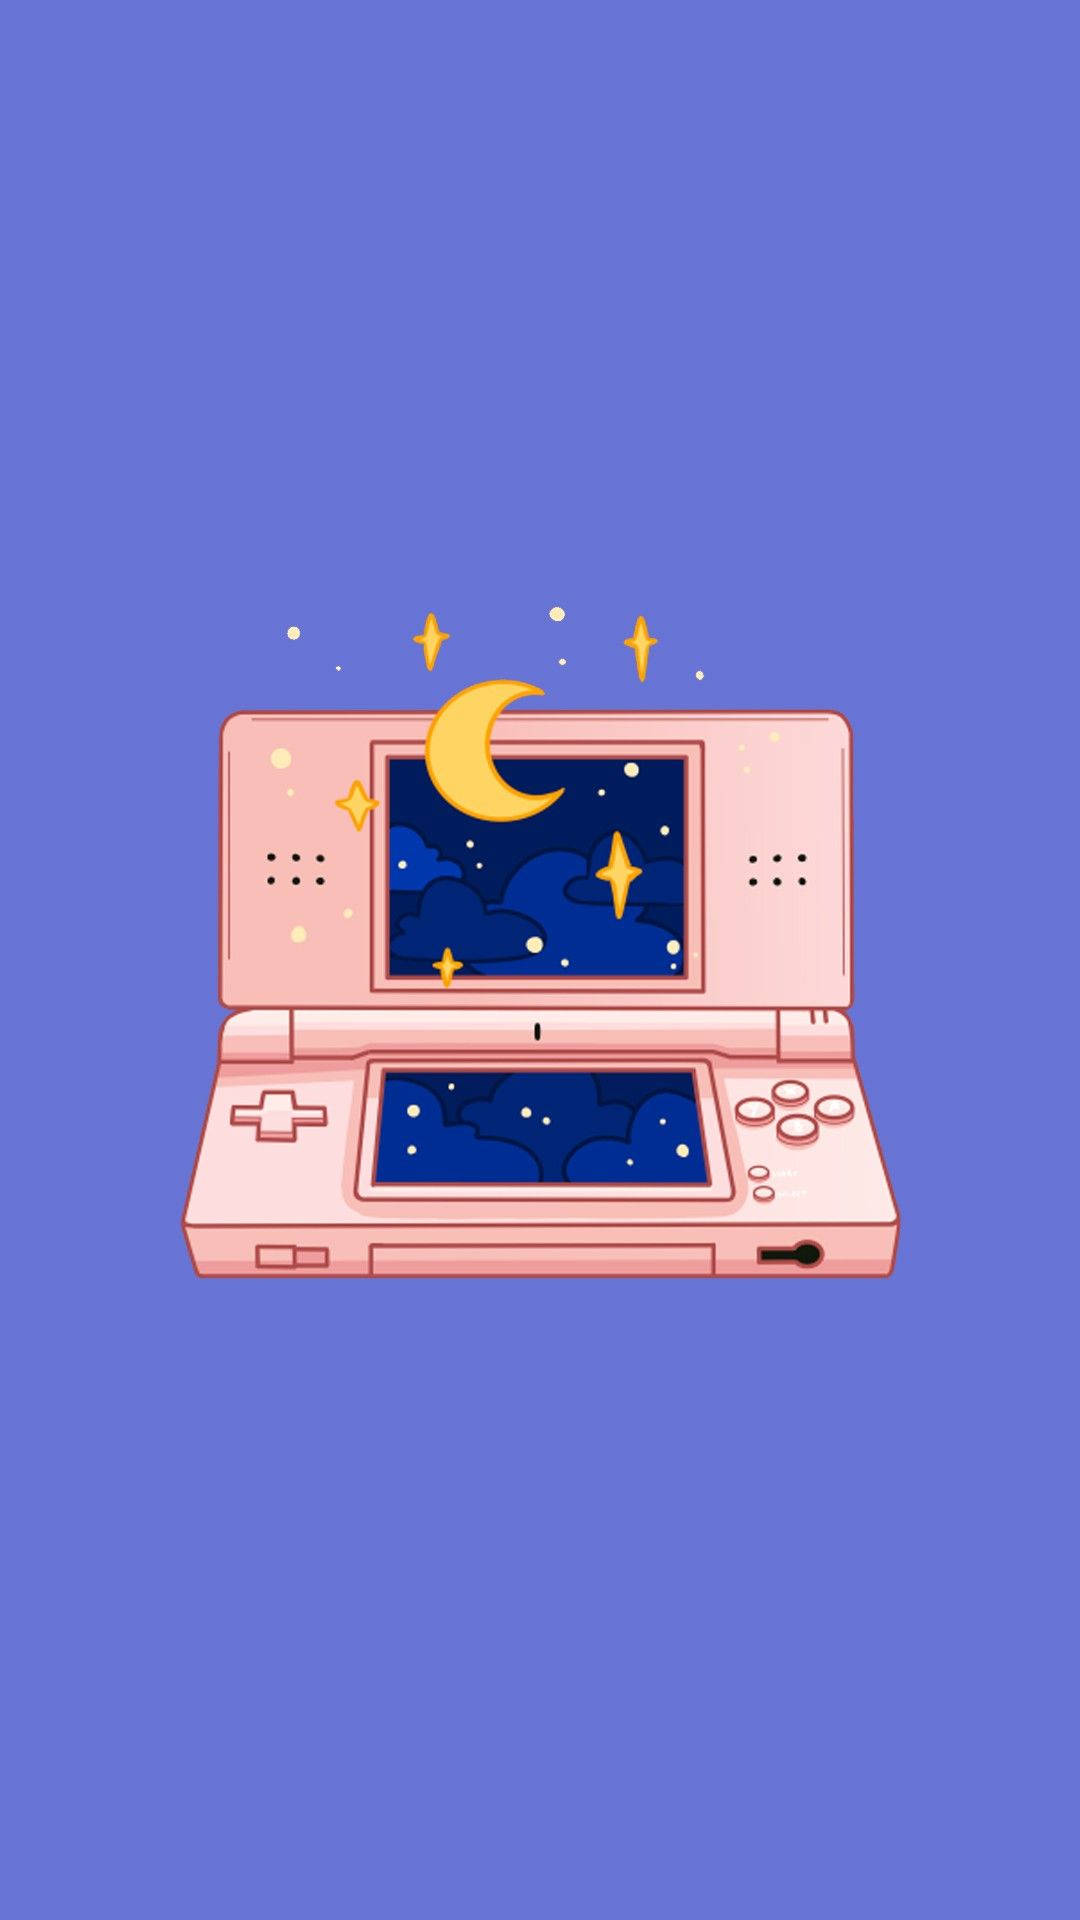 En pink Nintendo DS med månen og stjerner. Wallpaper